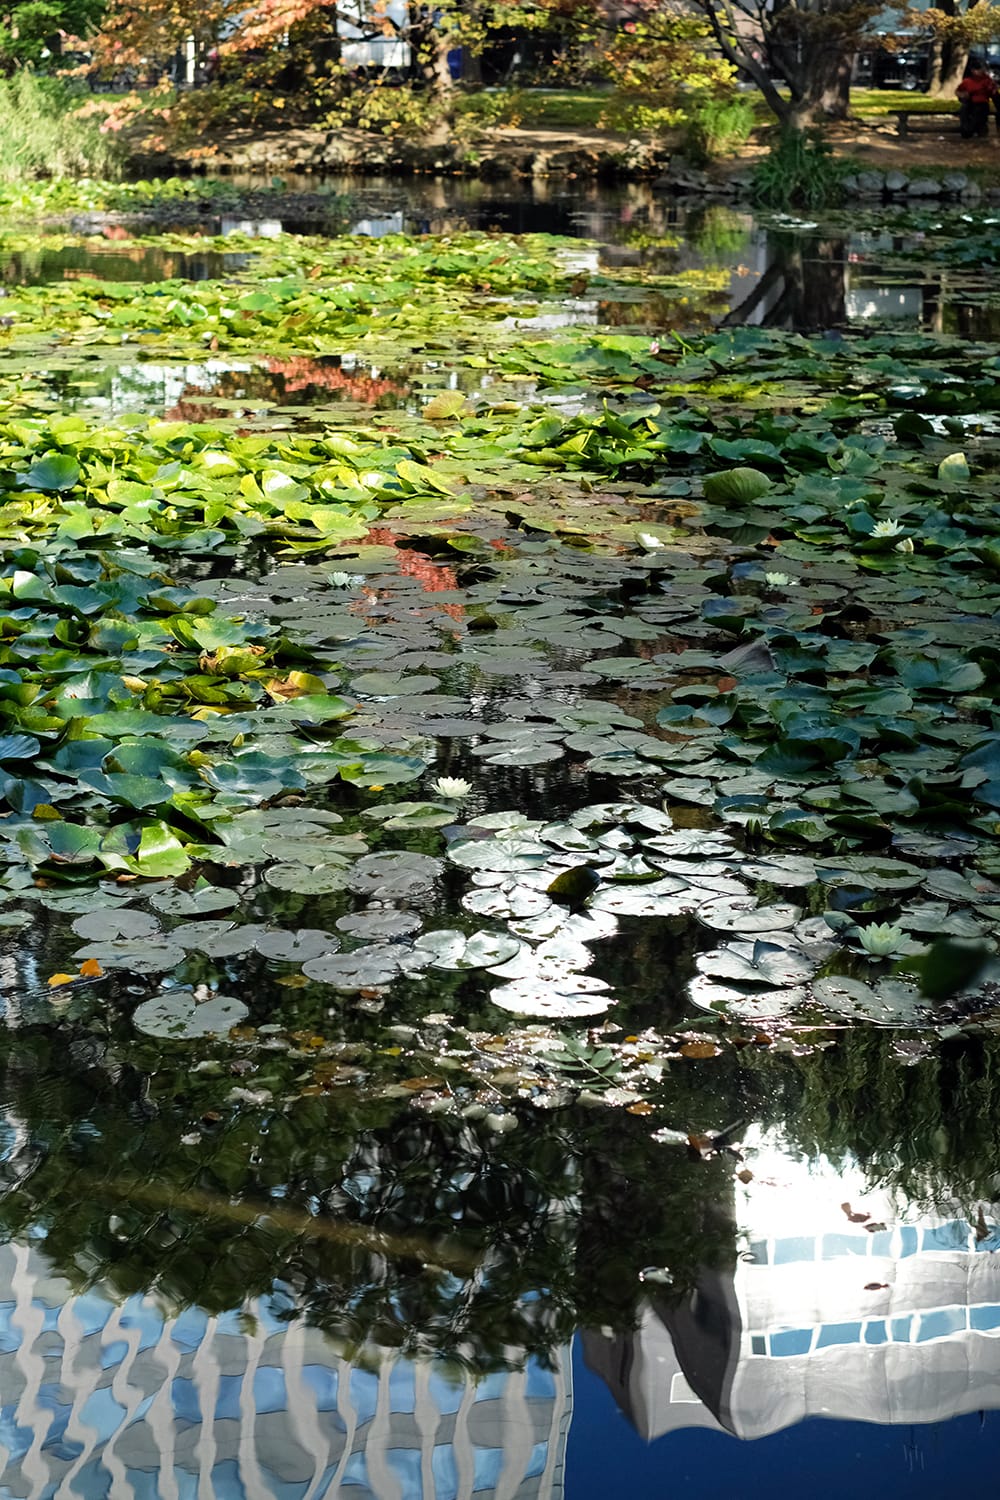 秋の道庁赤レンガ庁舎の池で咲いている睡蓮の白い花と水面に映るビル